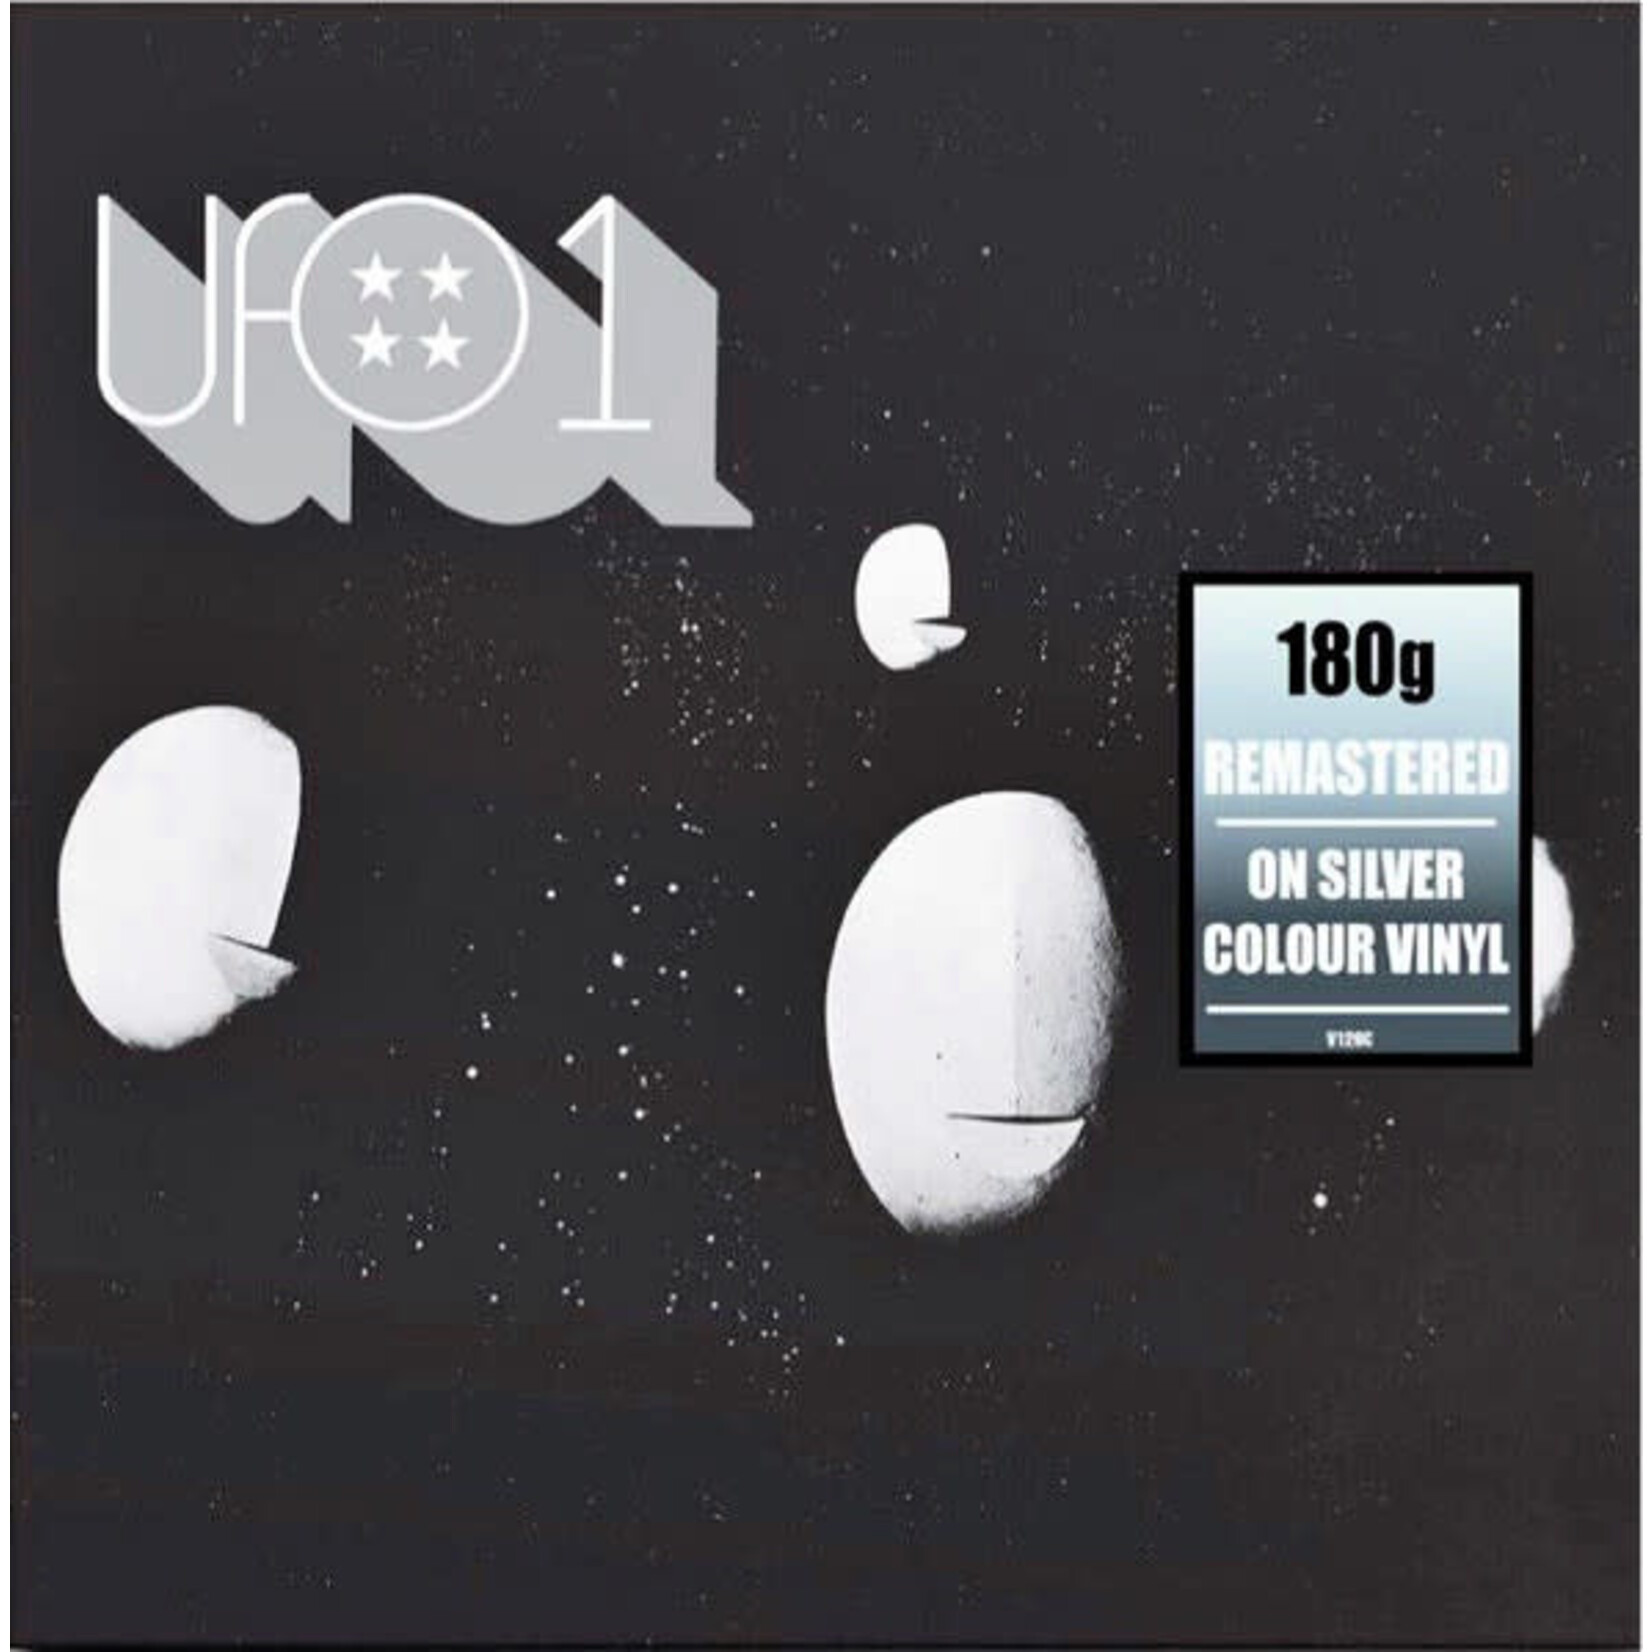 [New] U.F.O. - UFO 1 (silver vinyl)